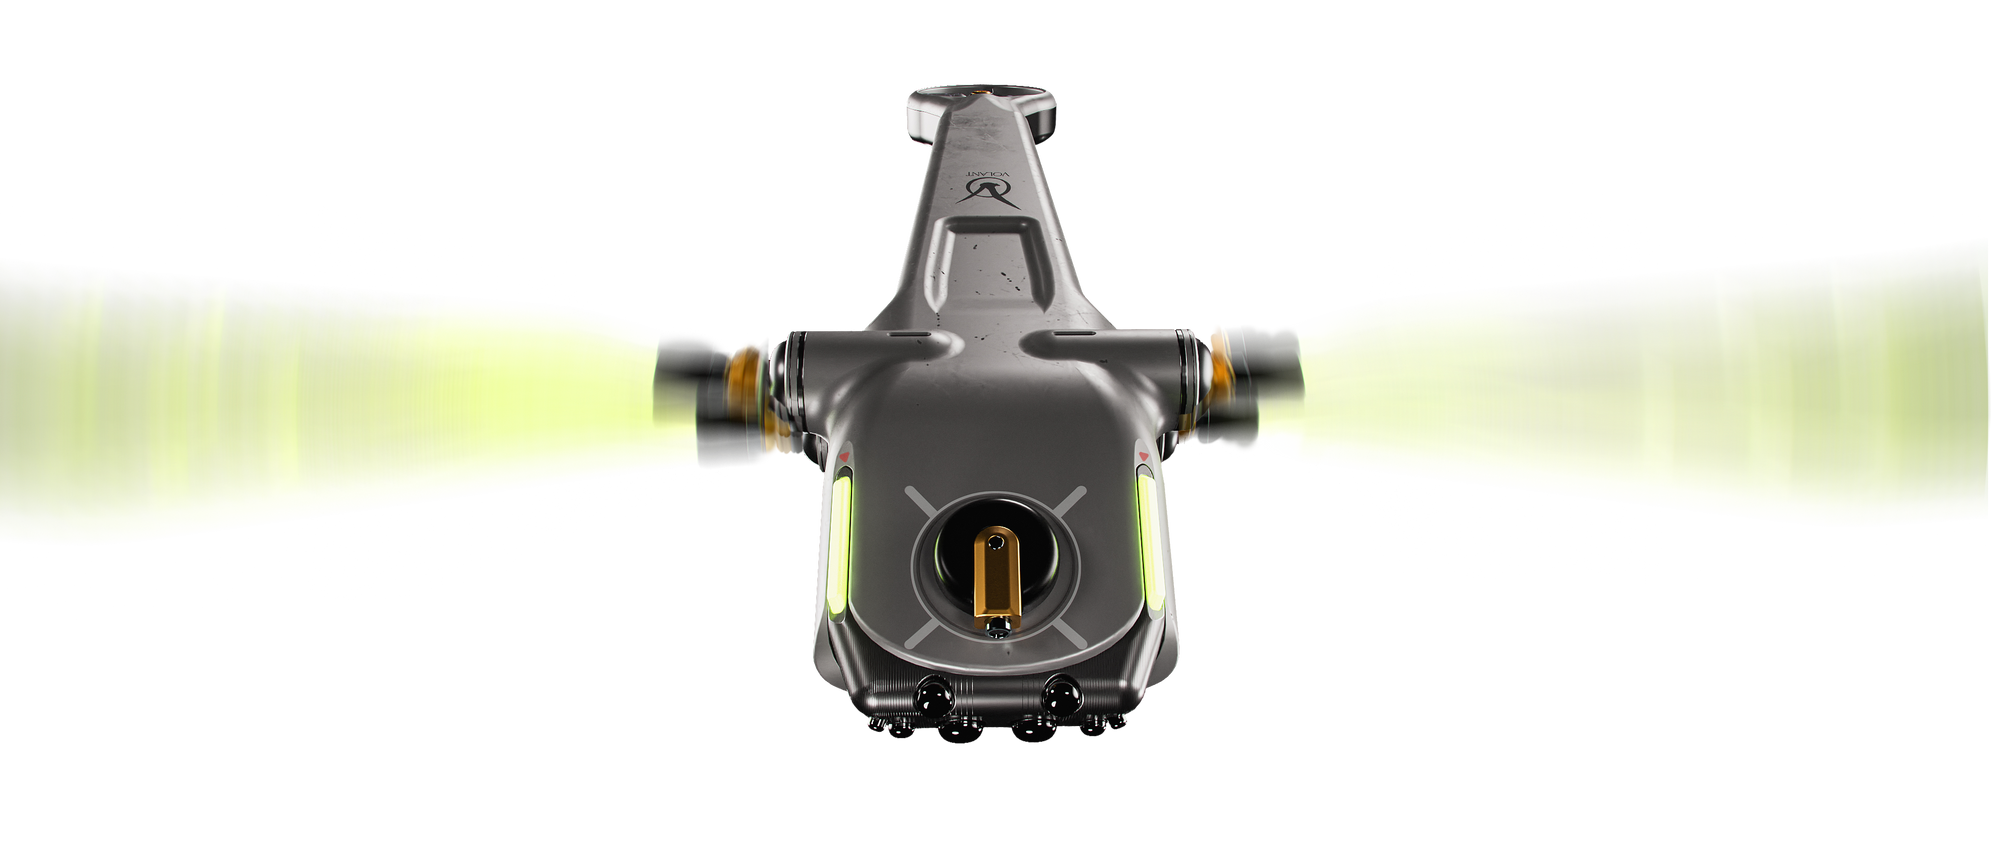 The Volant Bzzzt3 multi-use drone